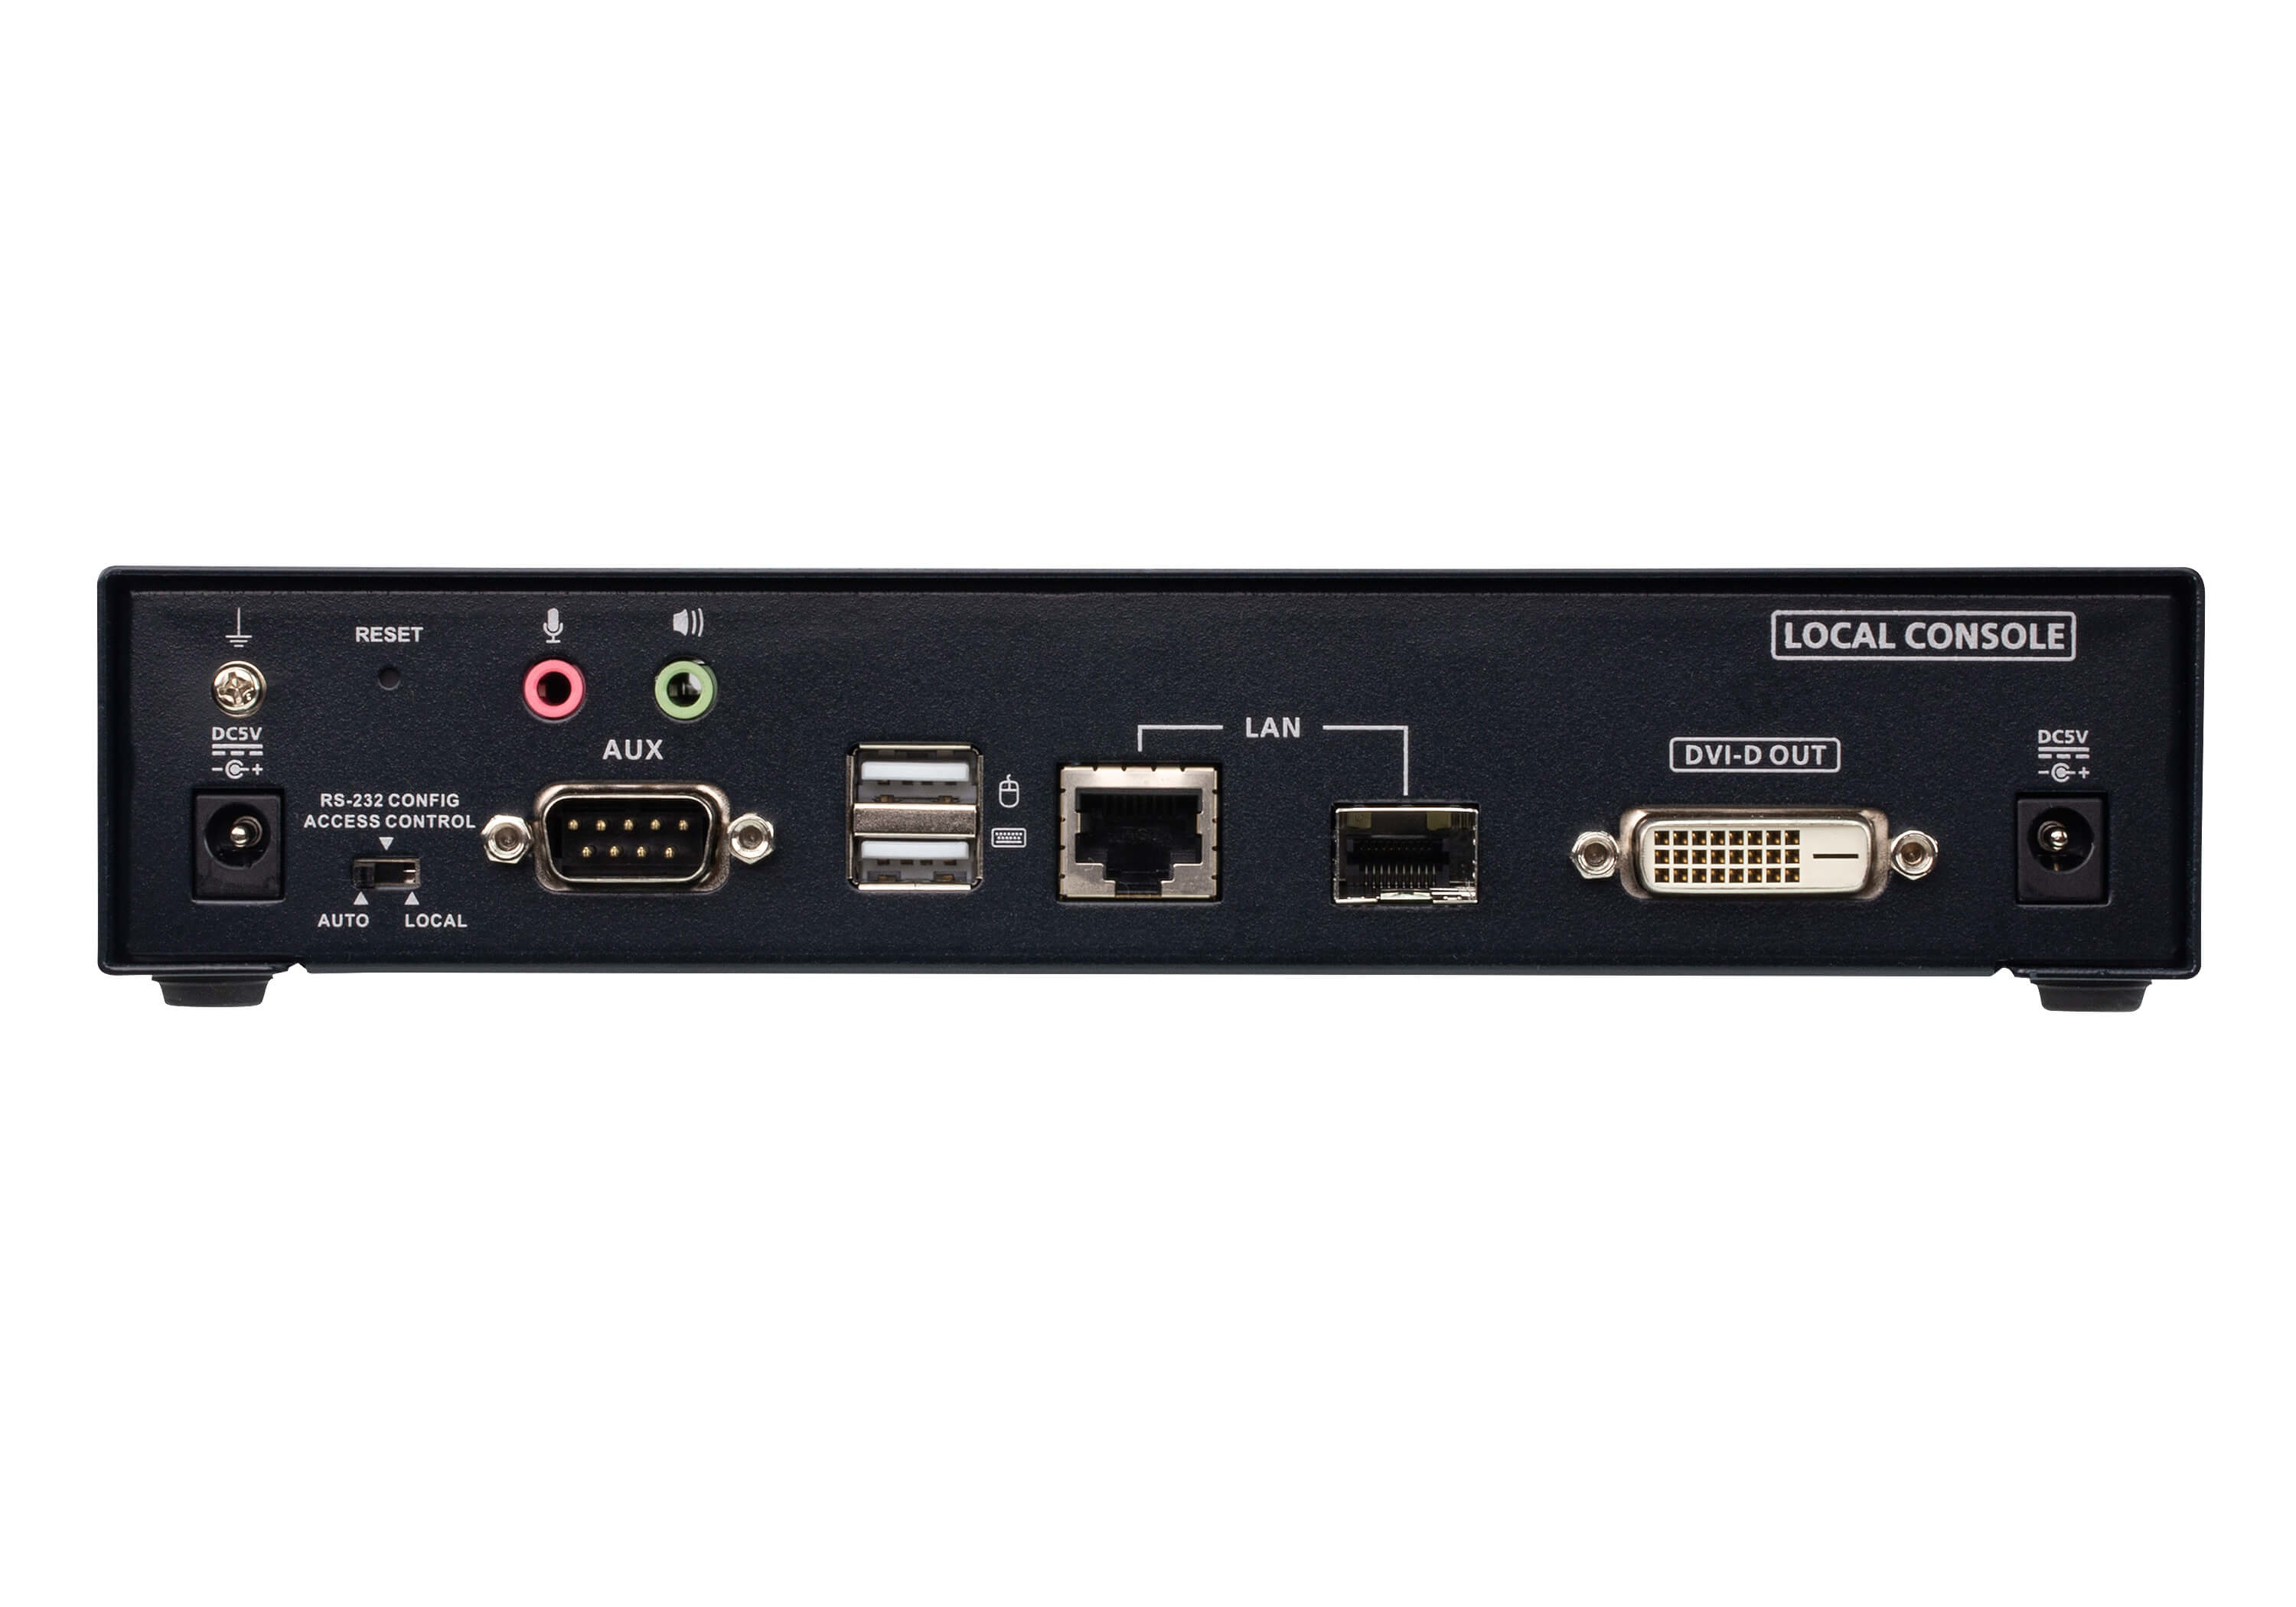 ATEN ALTUSEN KE6910T DVI KVM Over IP Extender (Transmitter)